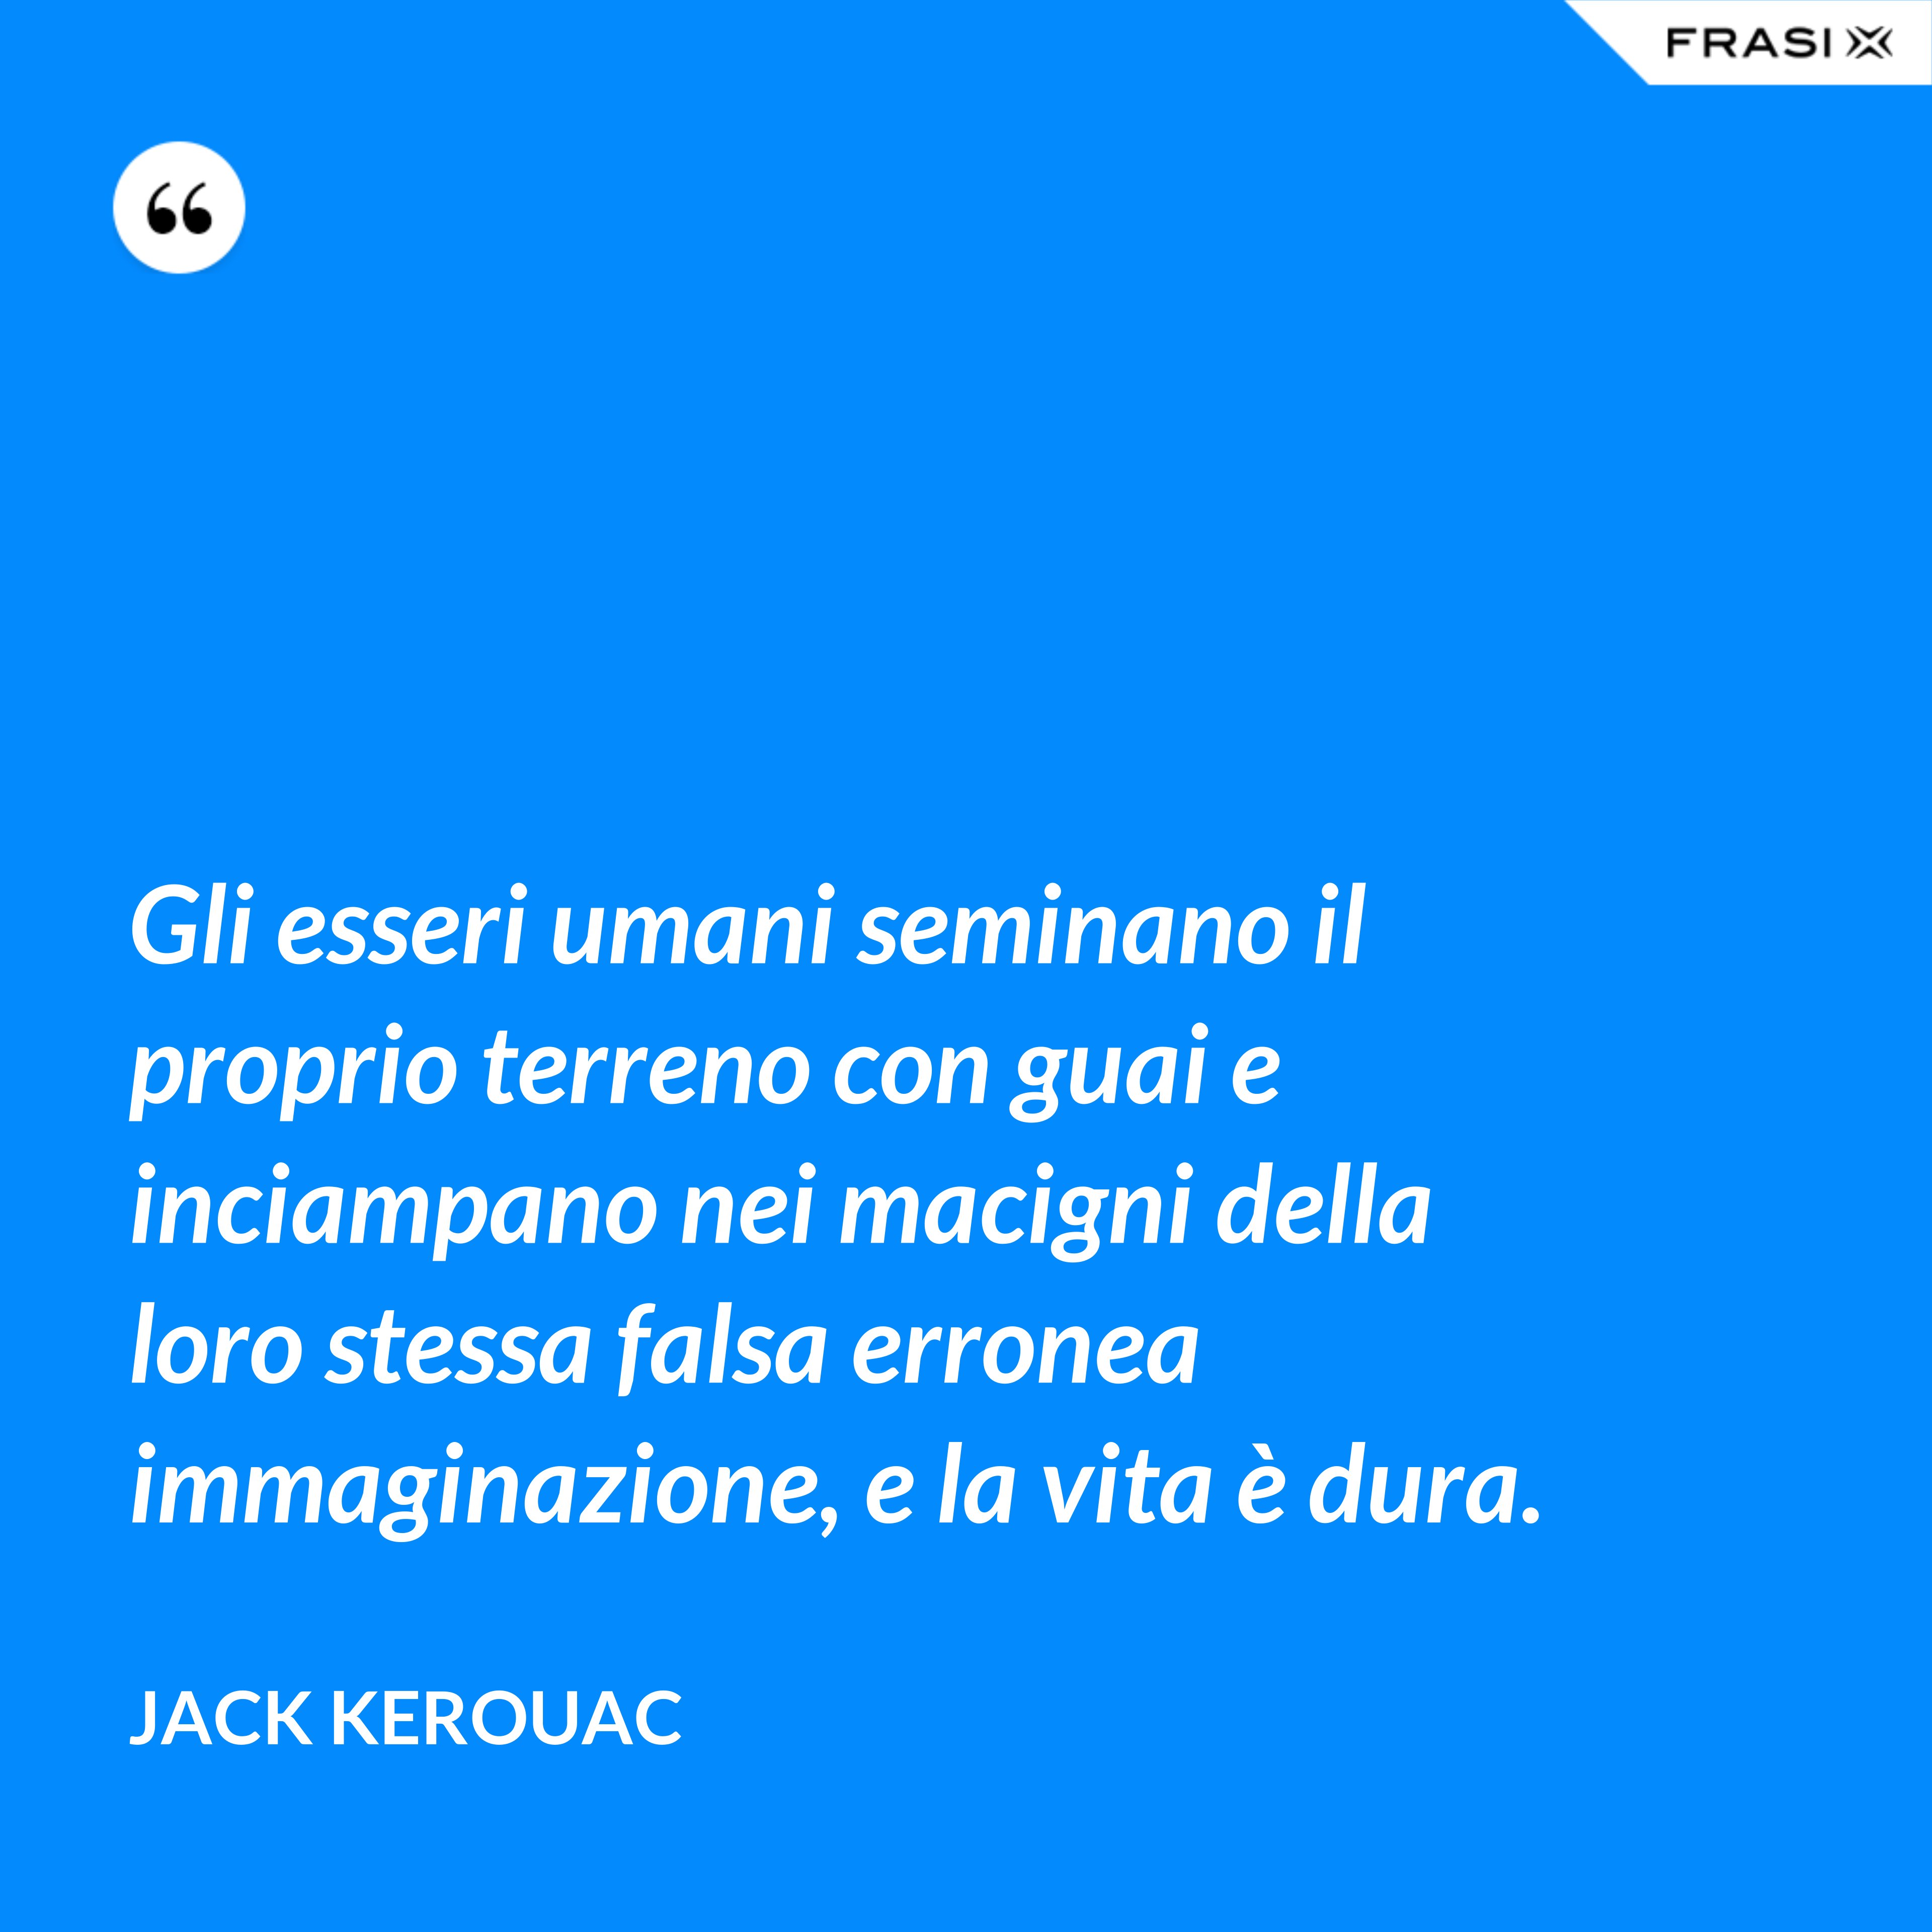 Gli esseri umani seminano il proprio terreno con guai e inciampano nei macigni della loro stessa falsa erronea immaginazione, e la vita è dura. - Jack Kerouac